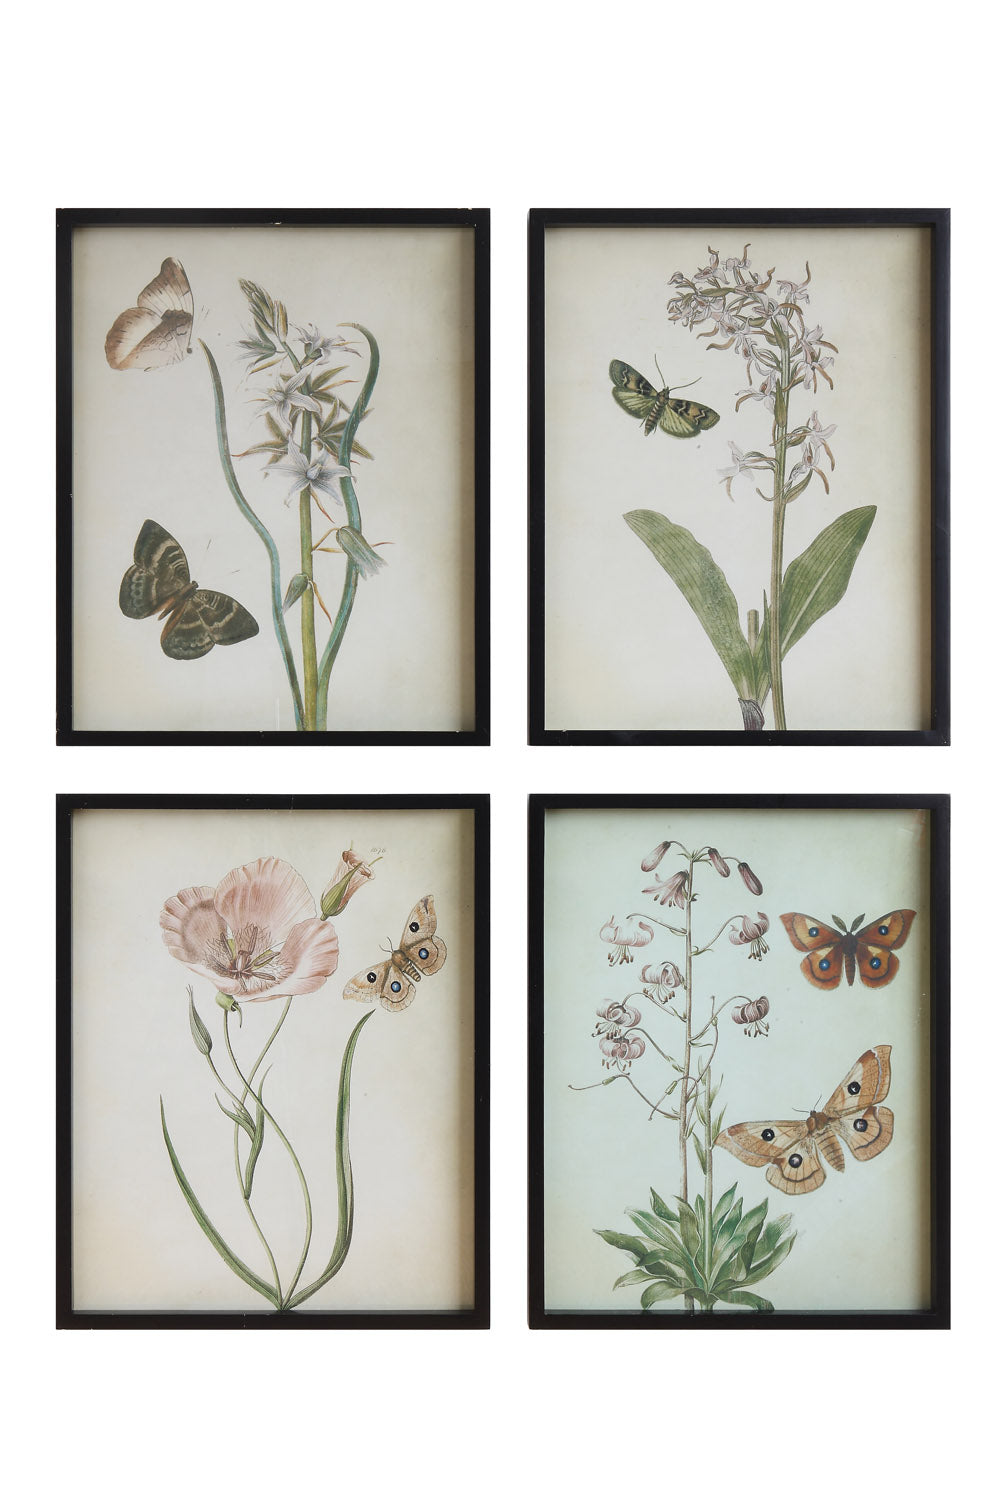 19"W x 23-1/2"H Wood Framed Wall Décor w/ Flowers & Butterflies, 4 Styles